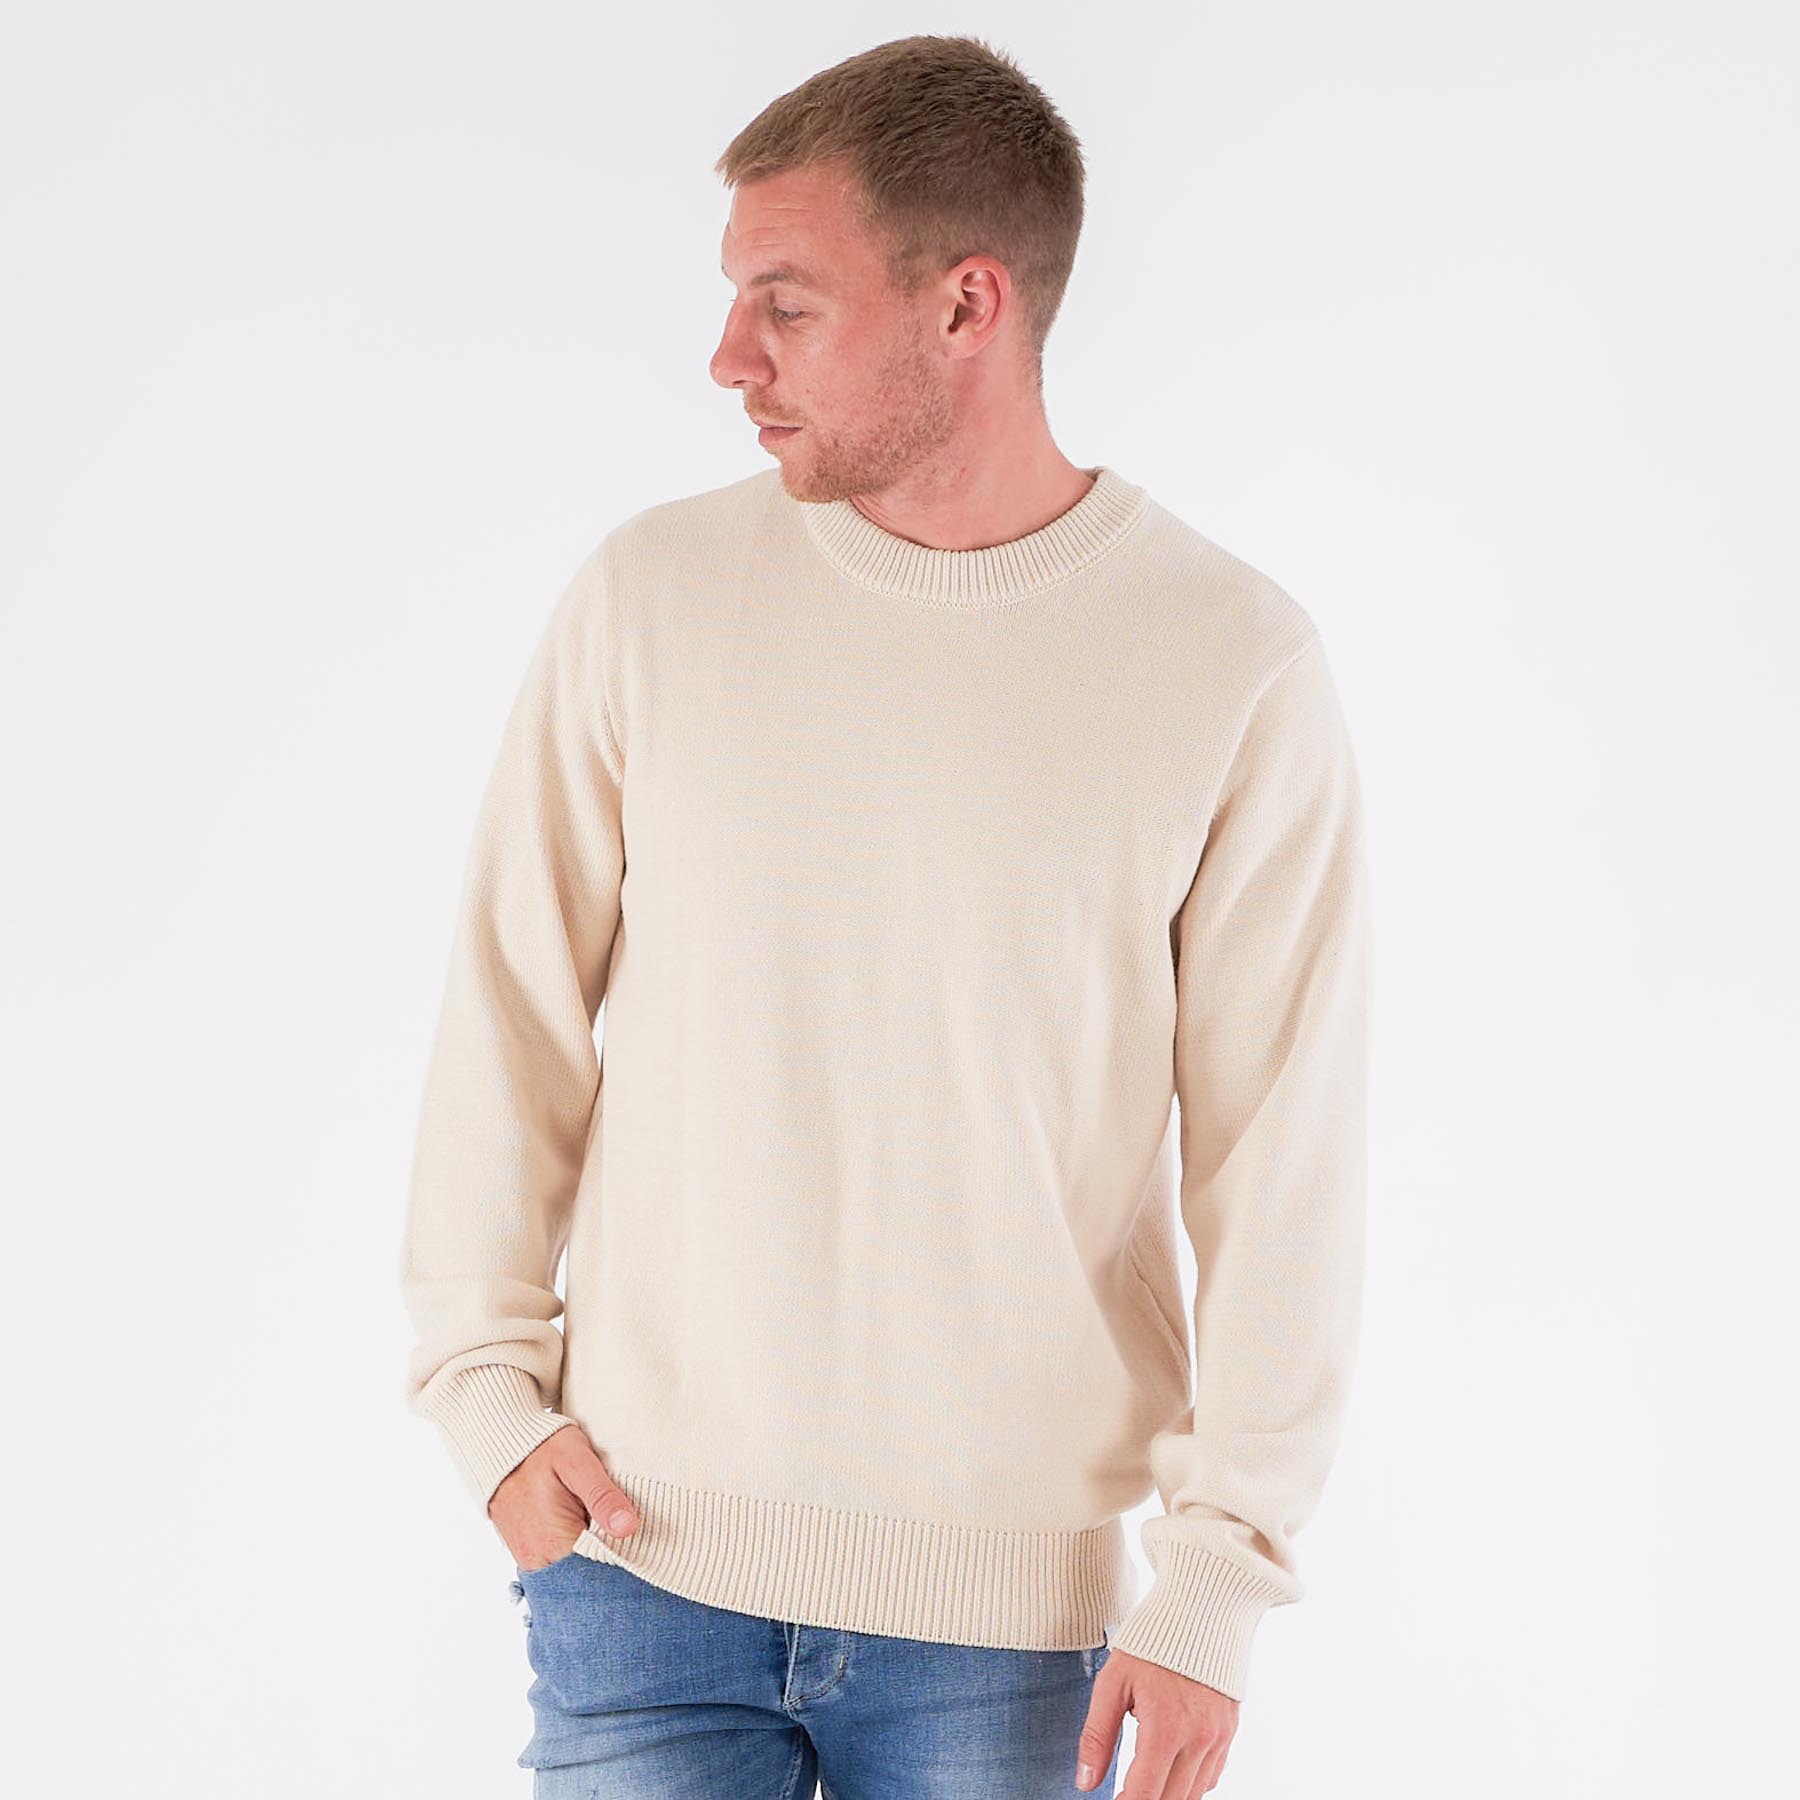 Les Deux - Gary cotton knit - Striktrøjer til herre - Hvid - XL